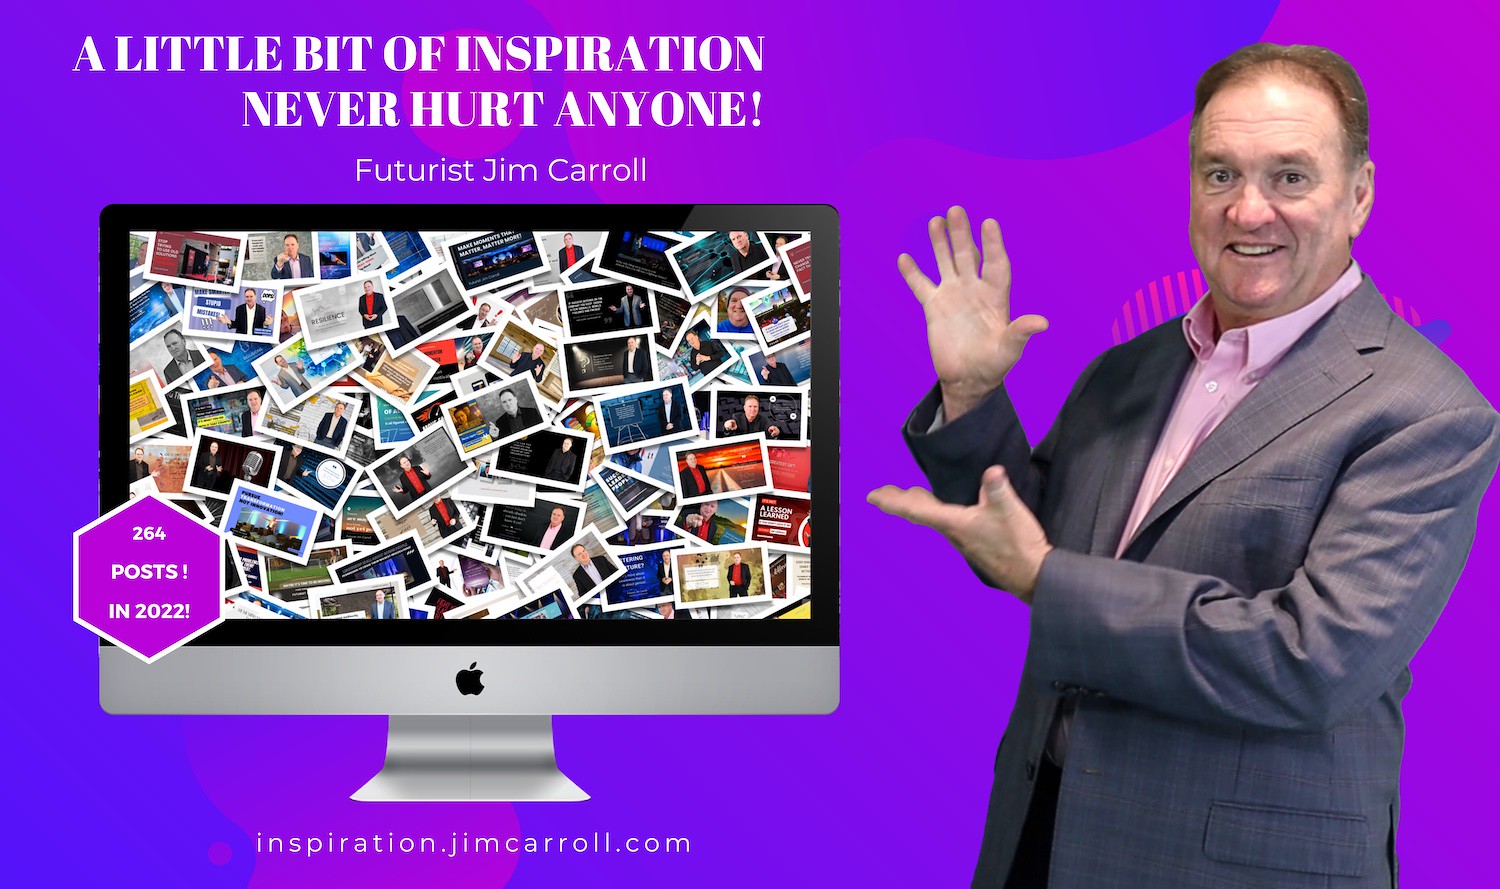 "A little bit of inspiration never hurt anyone!" - Futurist Jim Carroll